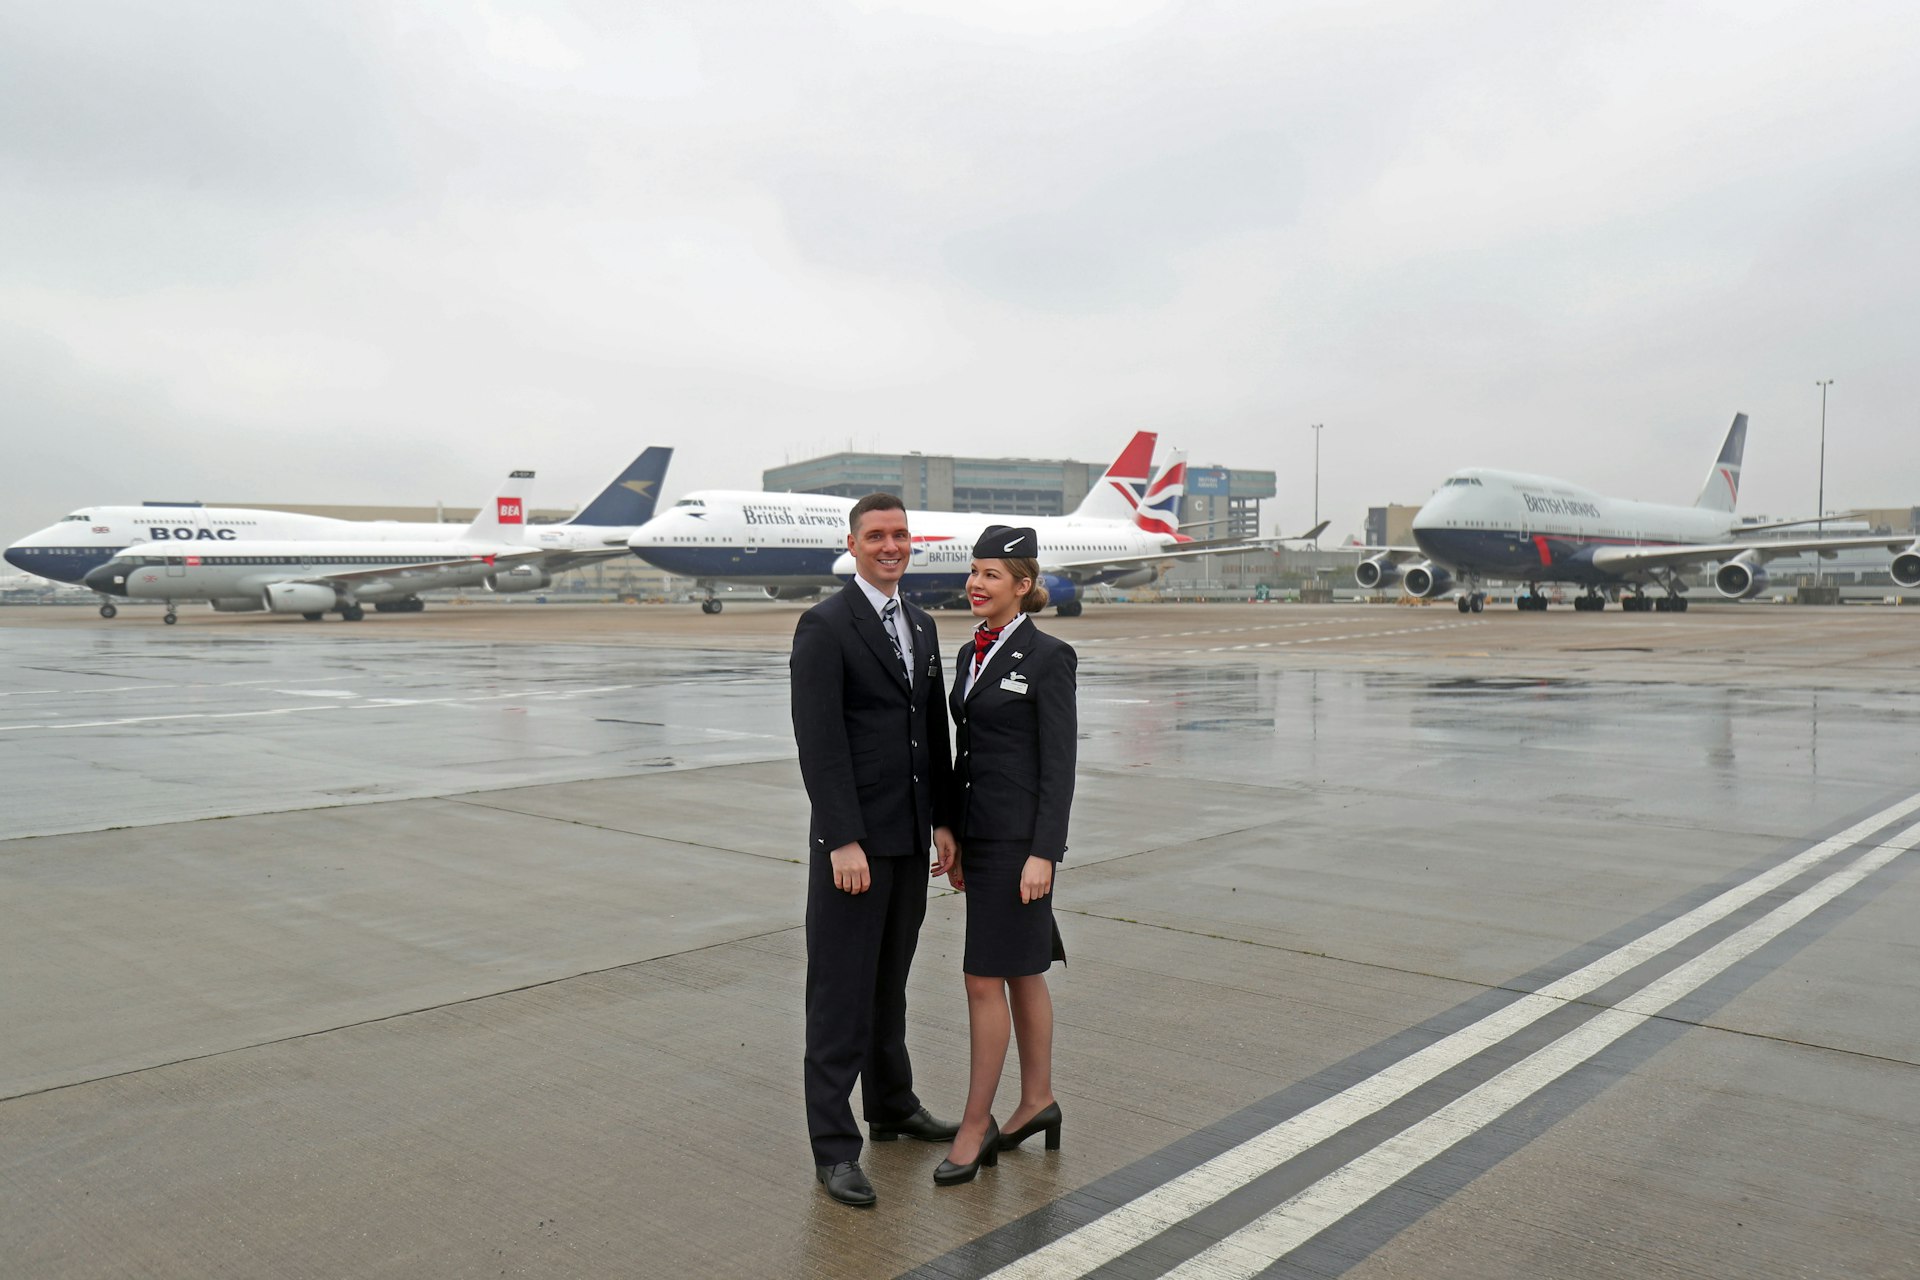 British Airways centenary fleet